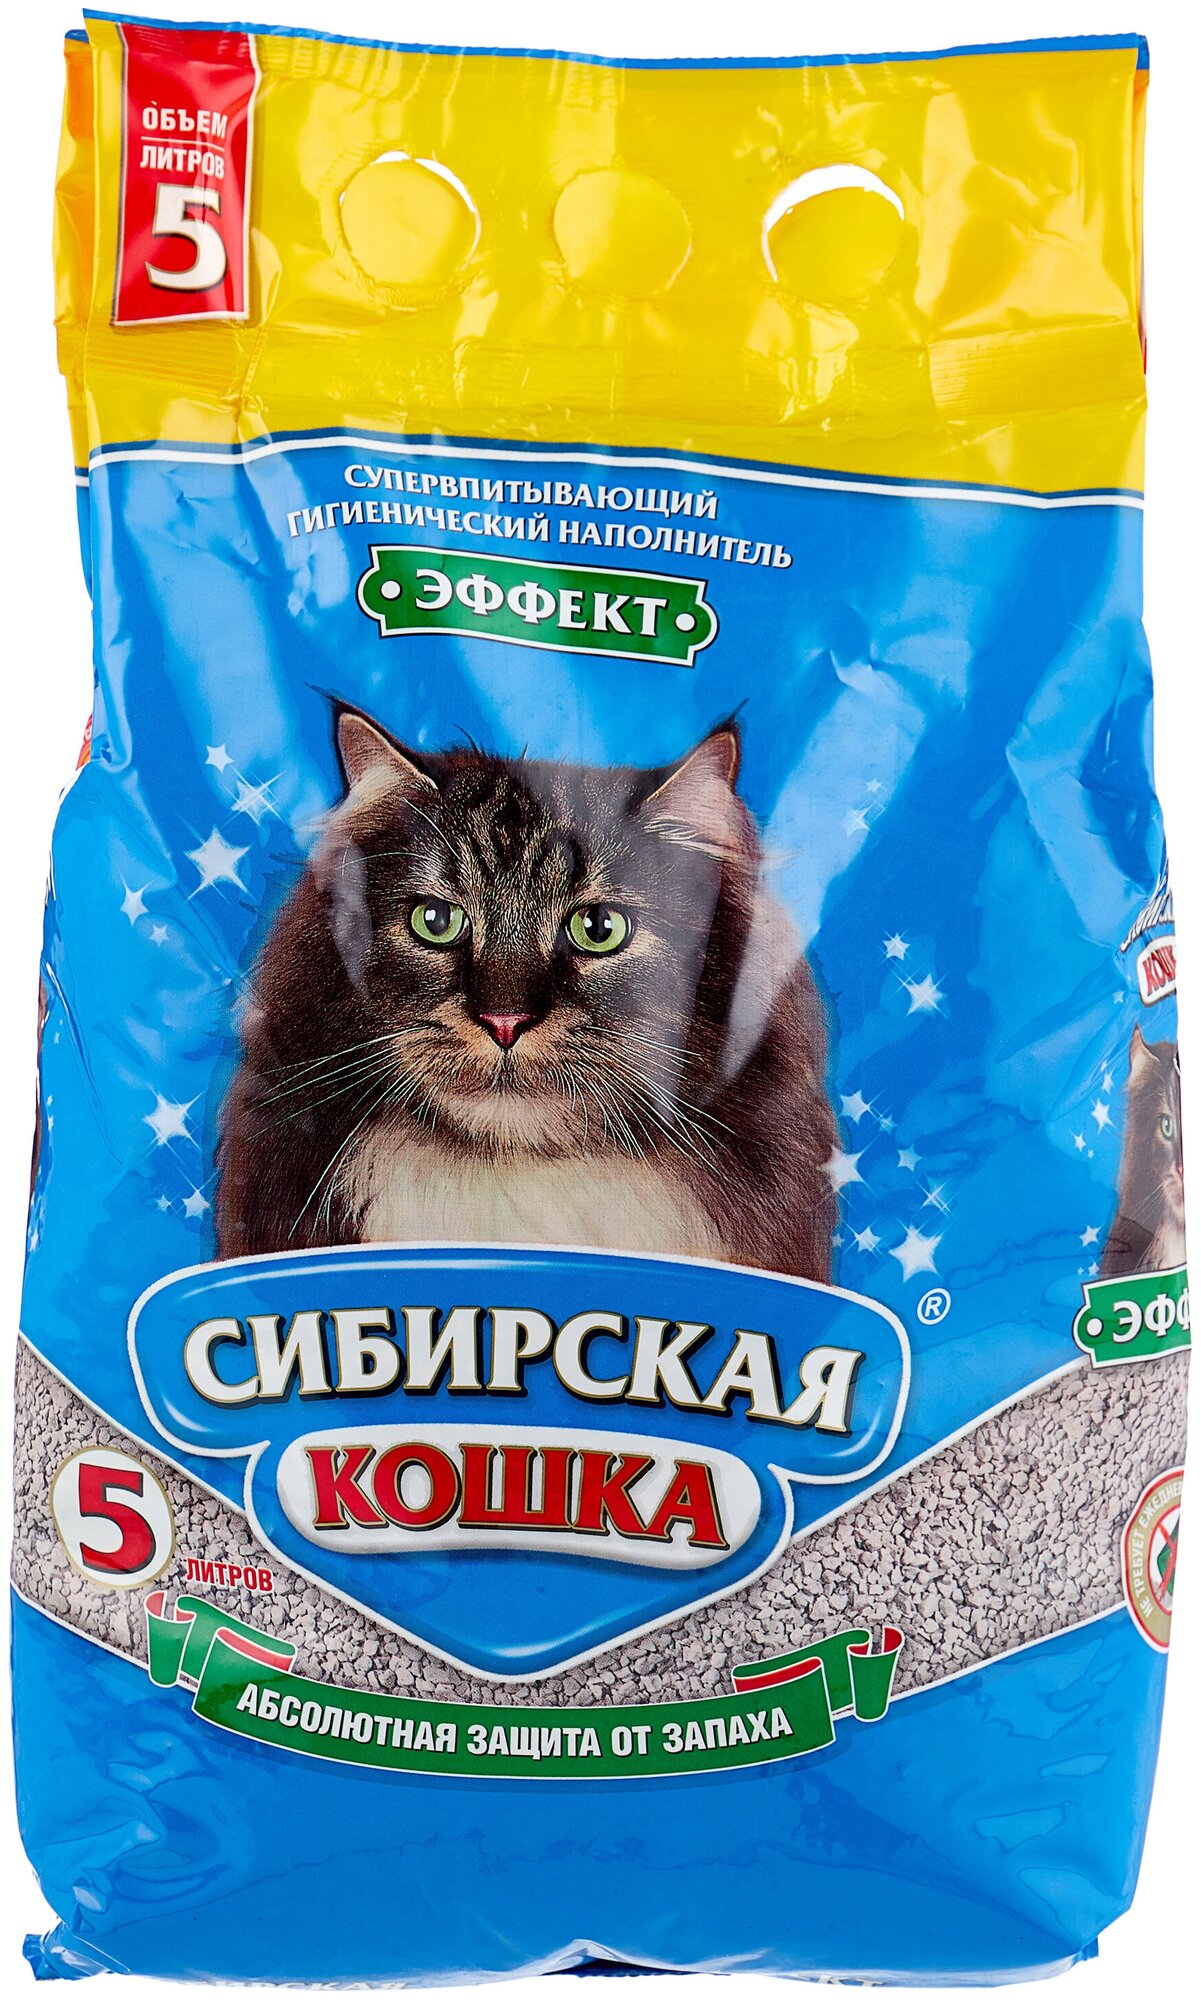 Впитывающий наполнитель Сибирская кошка Эффект, 5 л — купить в  интернет-магазине по низкой цене на Яндекс Маркете